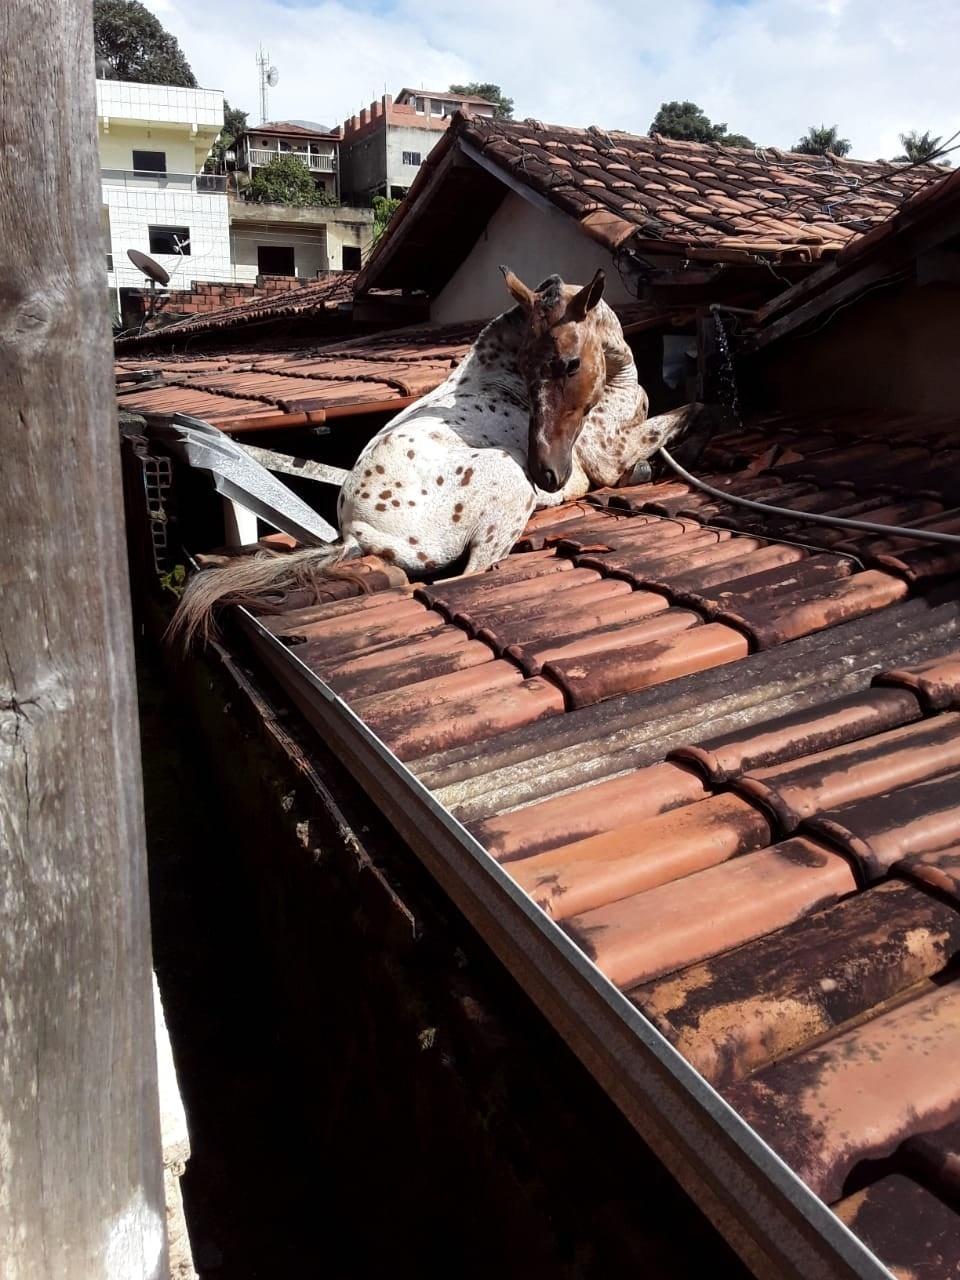 Cavalo cai de telhado e assusta família em Presidente Prudente - 06/05/2021  - Cotidiano - Folha